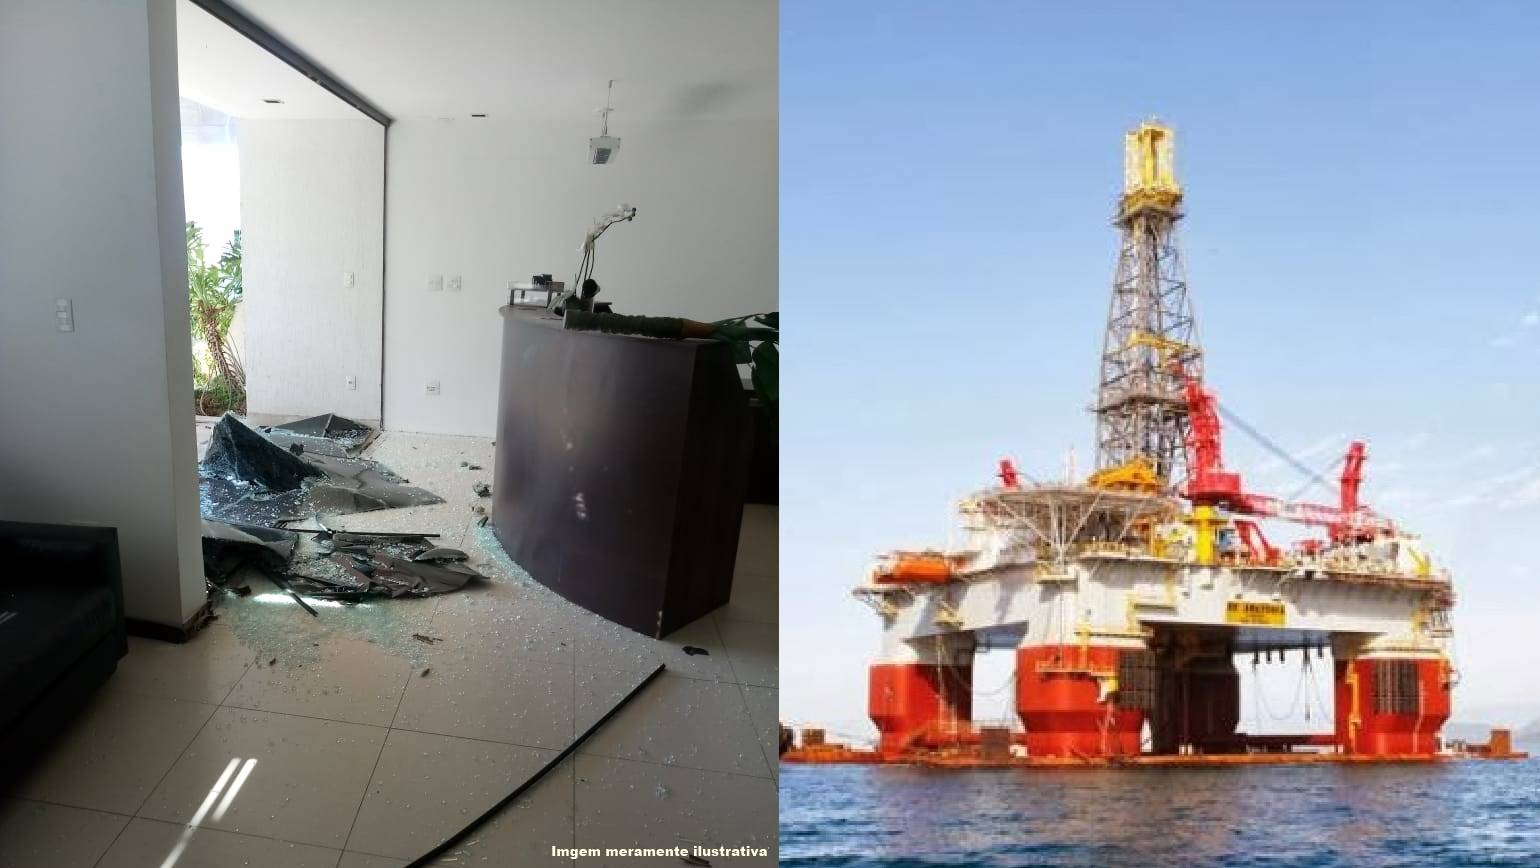 Empresa offshore em Macaé quebrada